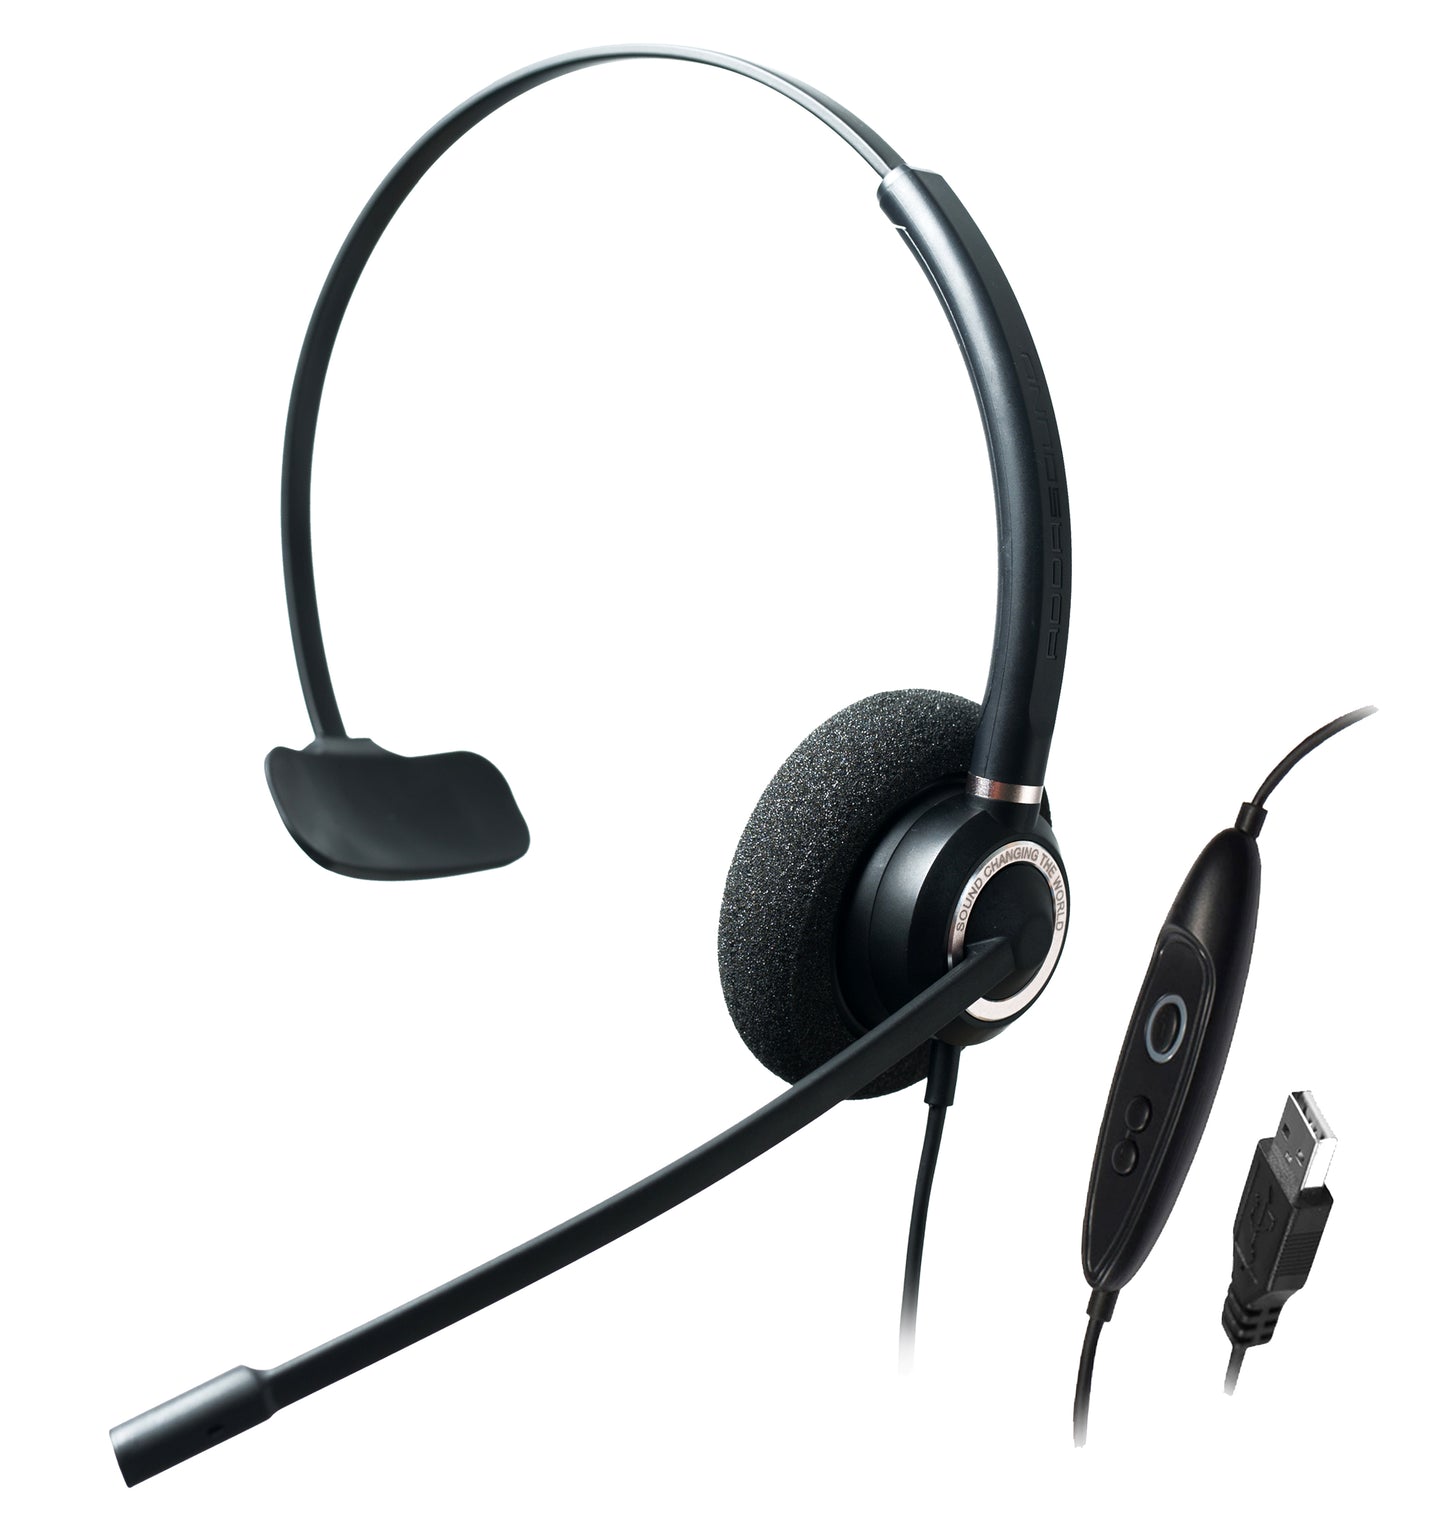 Addasound CRYSTAL-SR2831RG Single Ear, Advanced Noise Cancelling USB